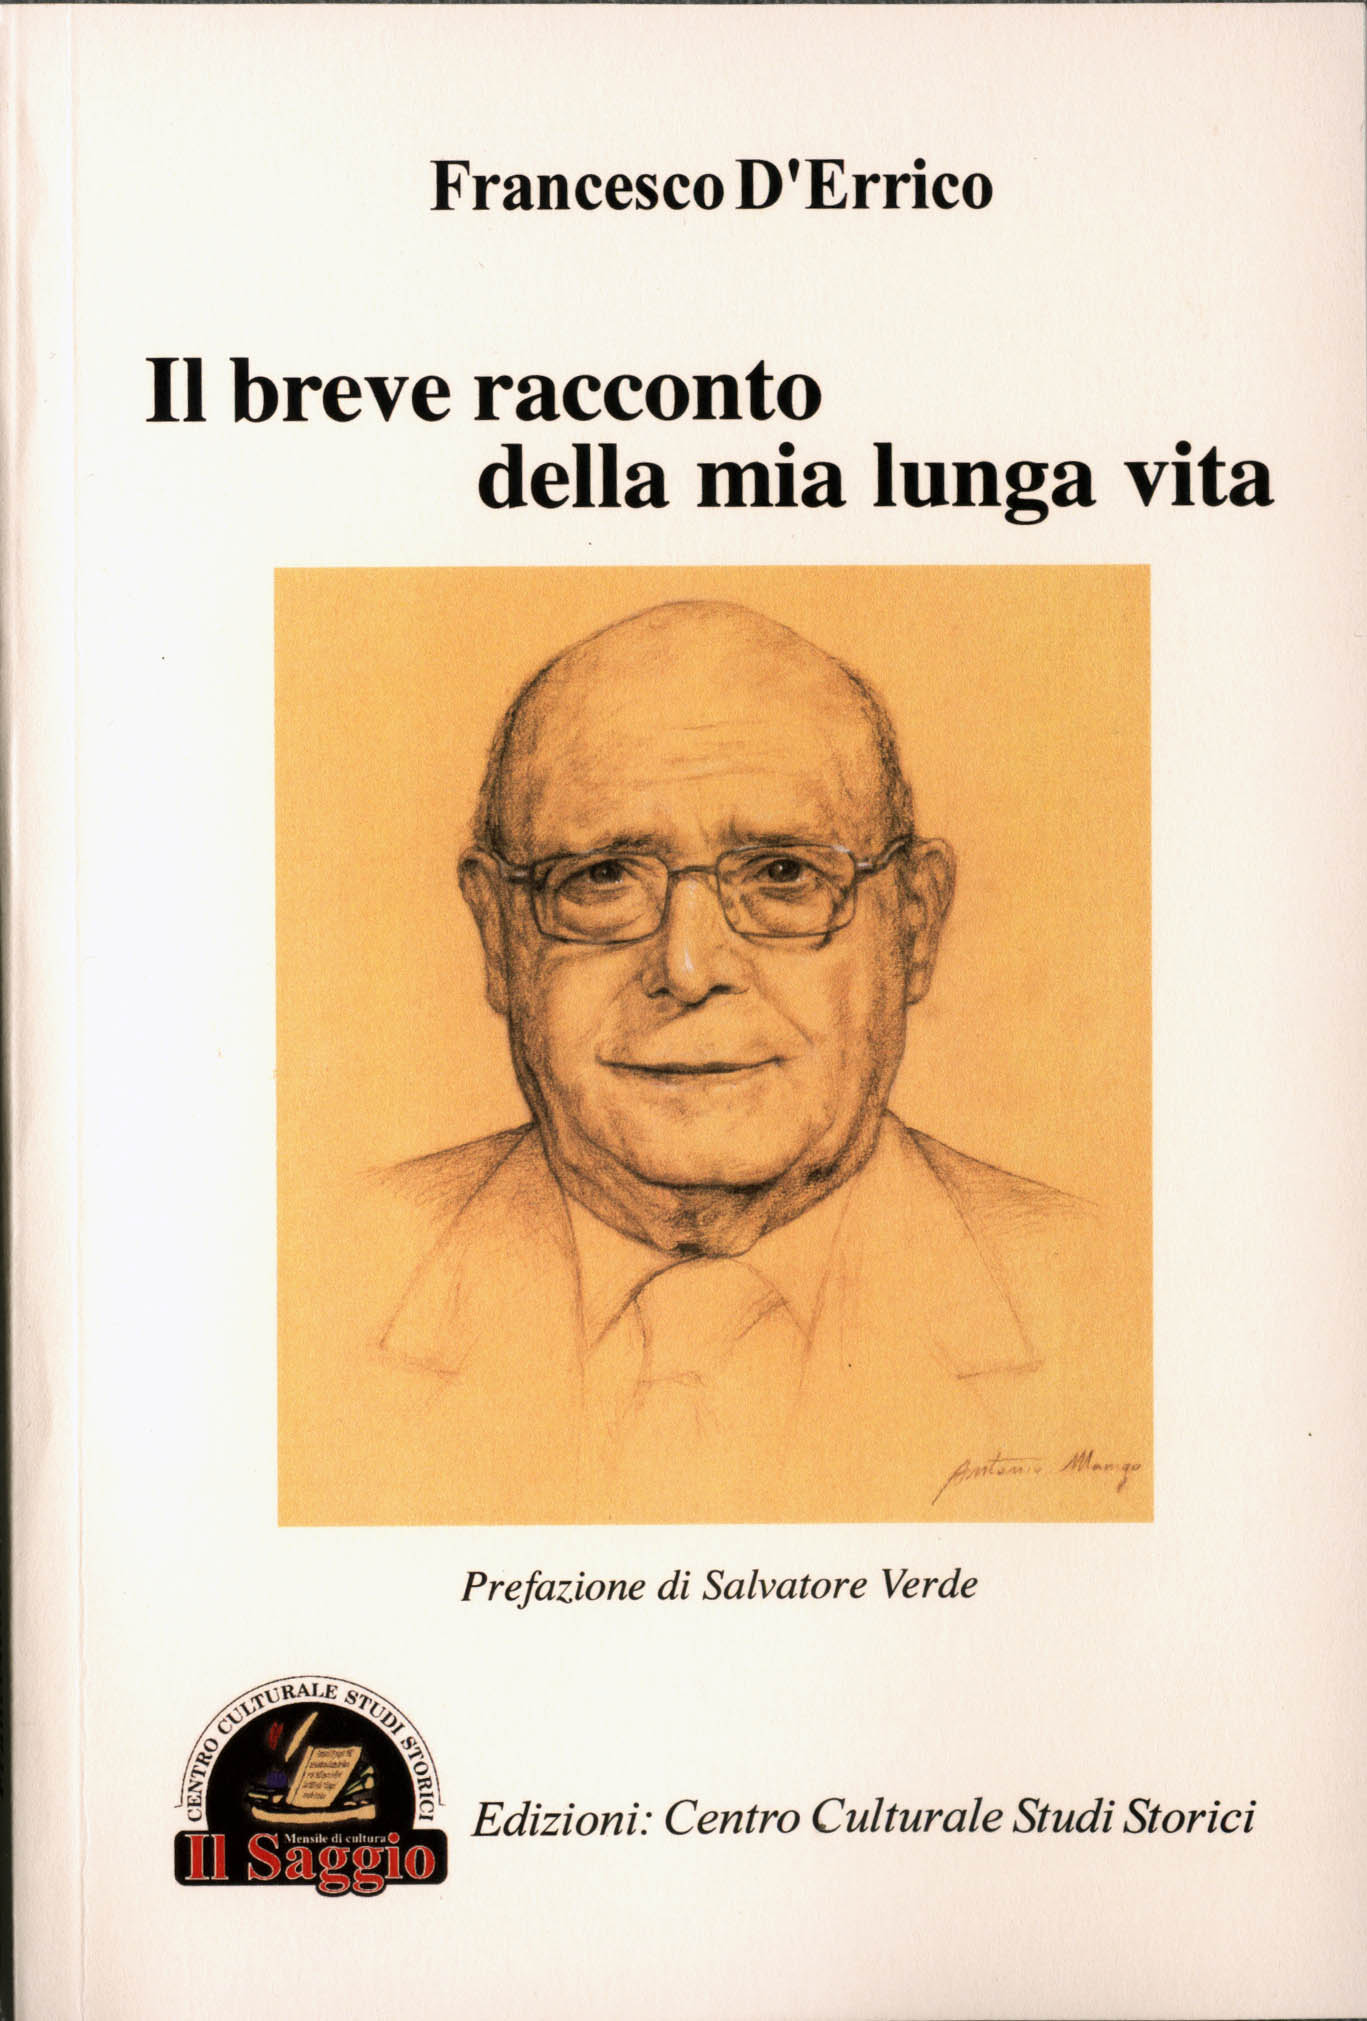 La copertina del libro di Francesco D'Errico, con il ritratto dell'auore eseguito dall'artista tursitano Antonio Mango